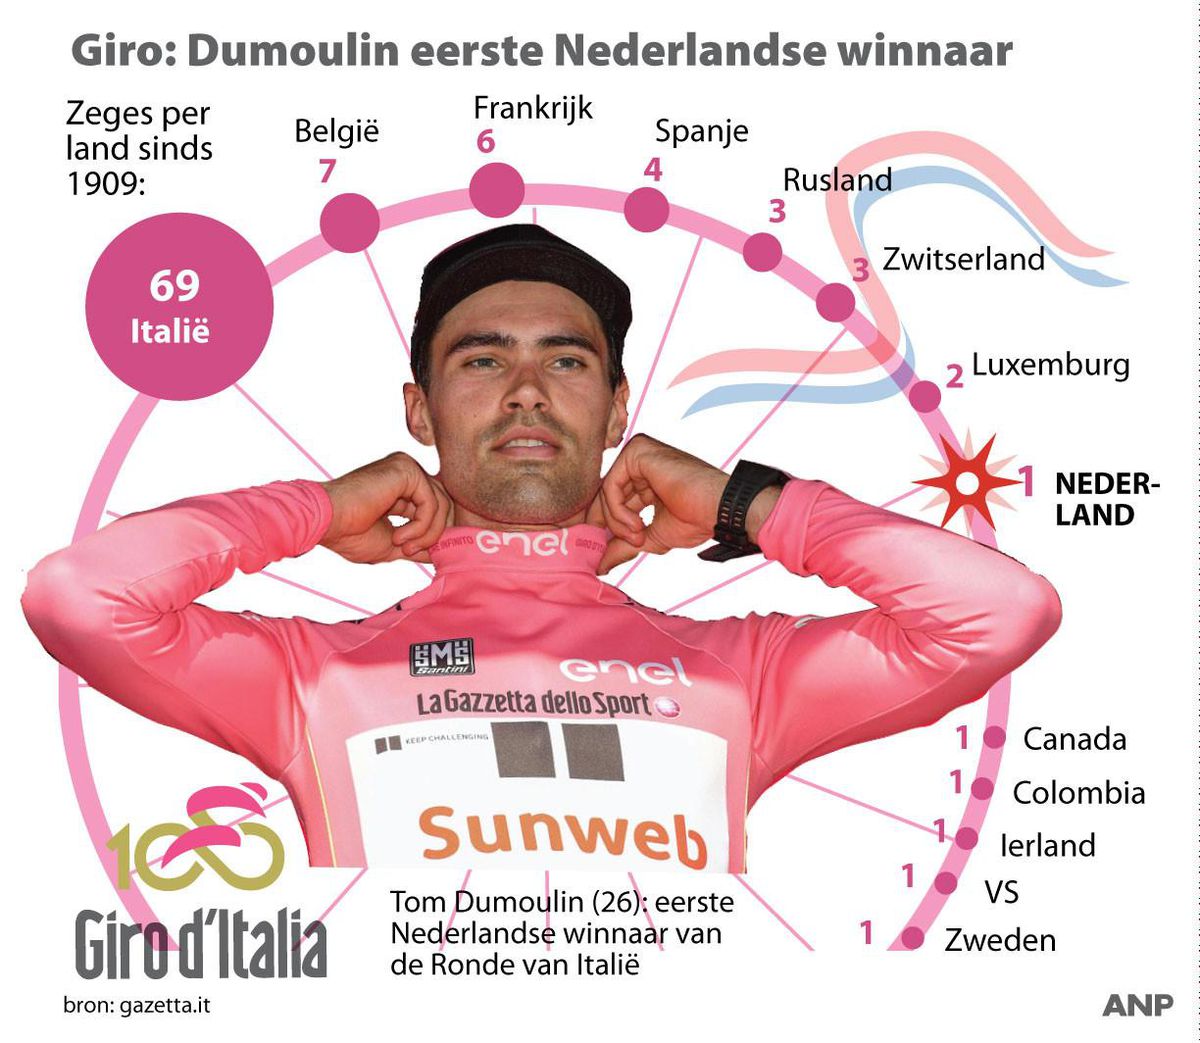 Nederland is 13e land dat een Giro-winnaar heeft